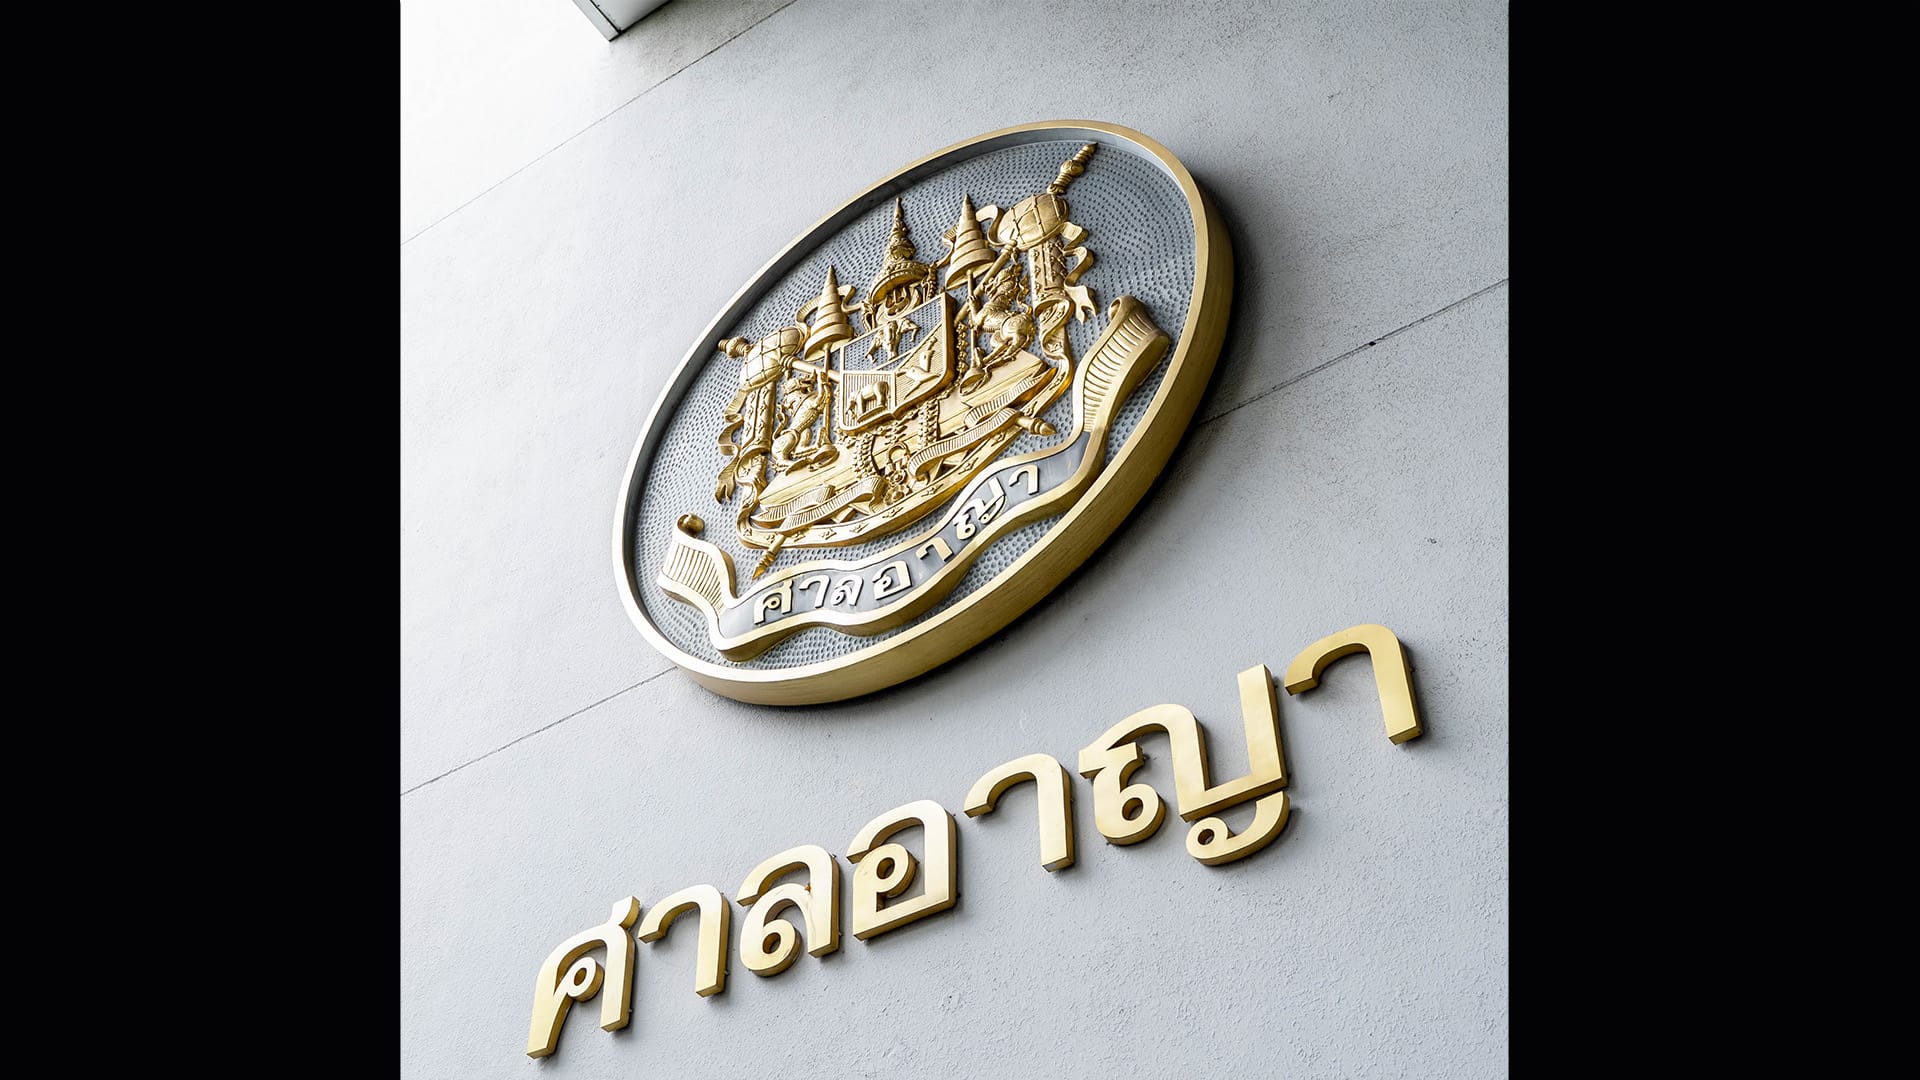 Bangkok Criminal Court